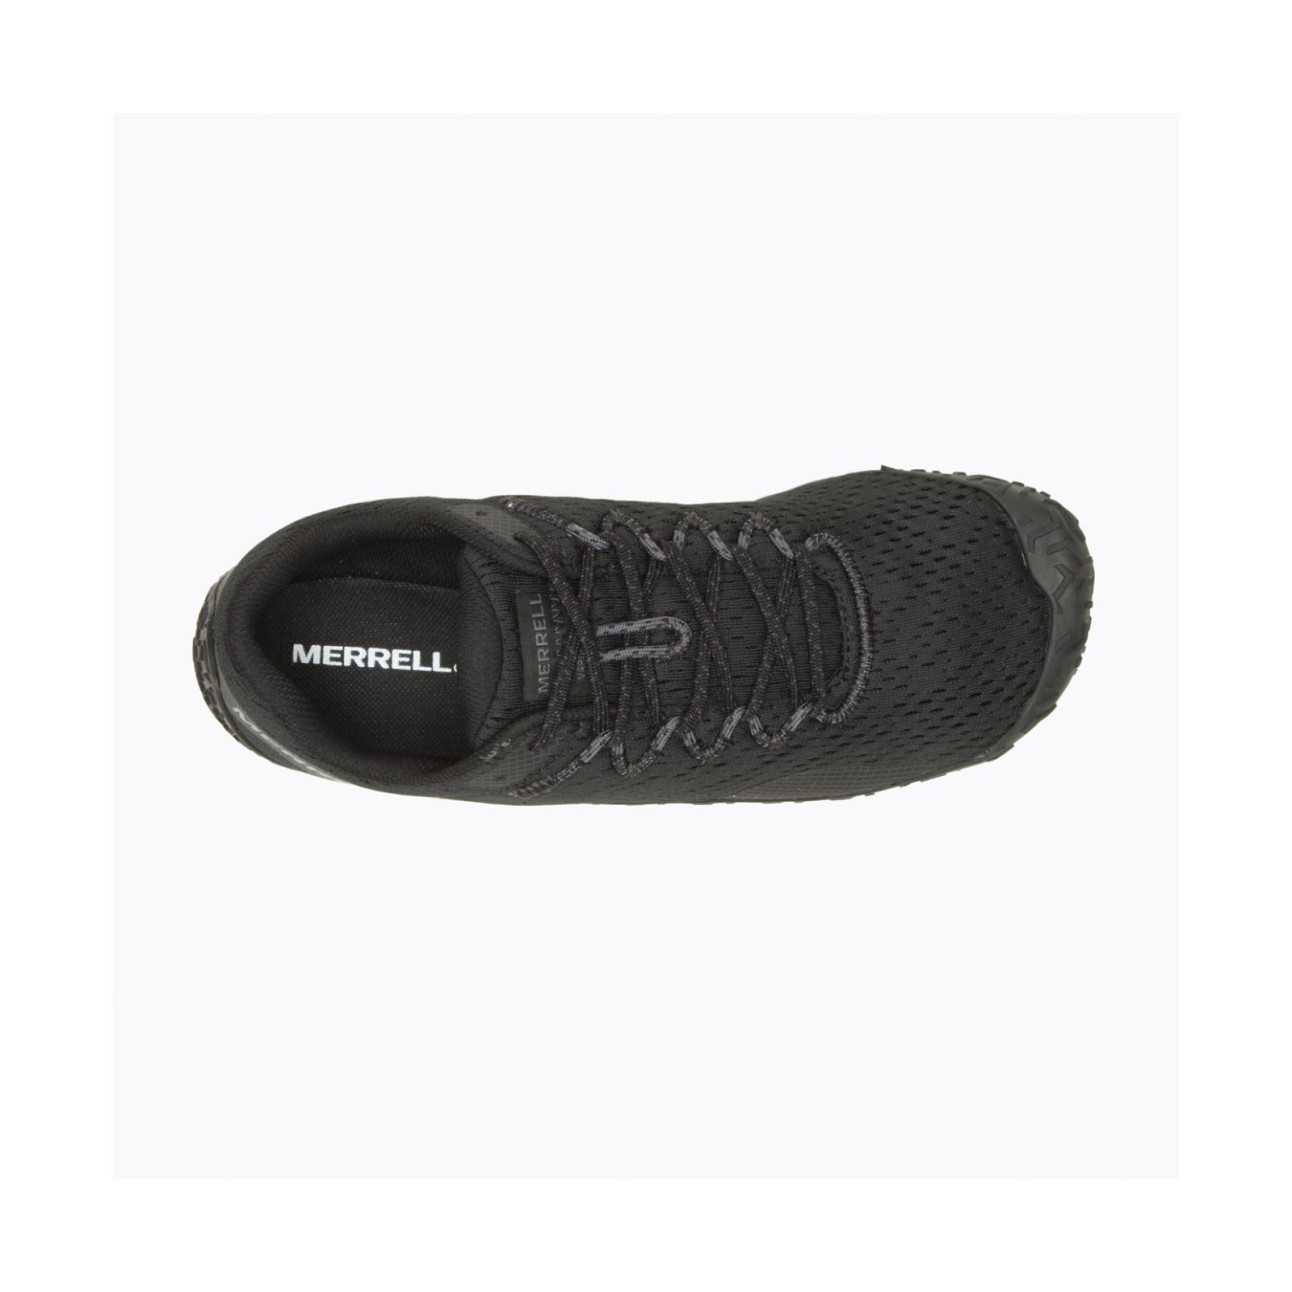 Merrell J067250 - Zapato de senderismo para mujer Vapor Glove 5 Borgoña US  Talla 6, Borgoña